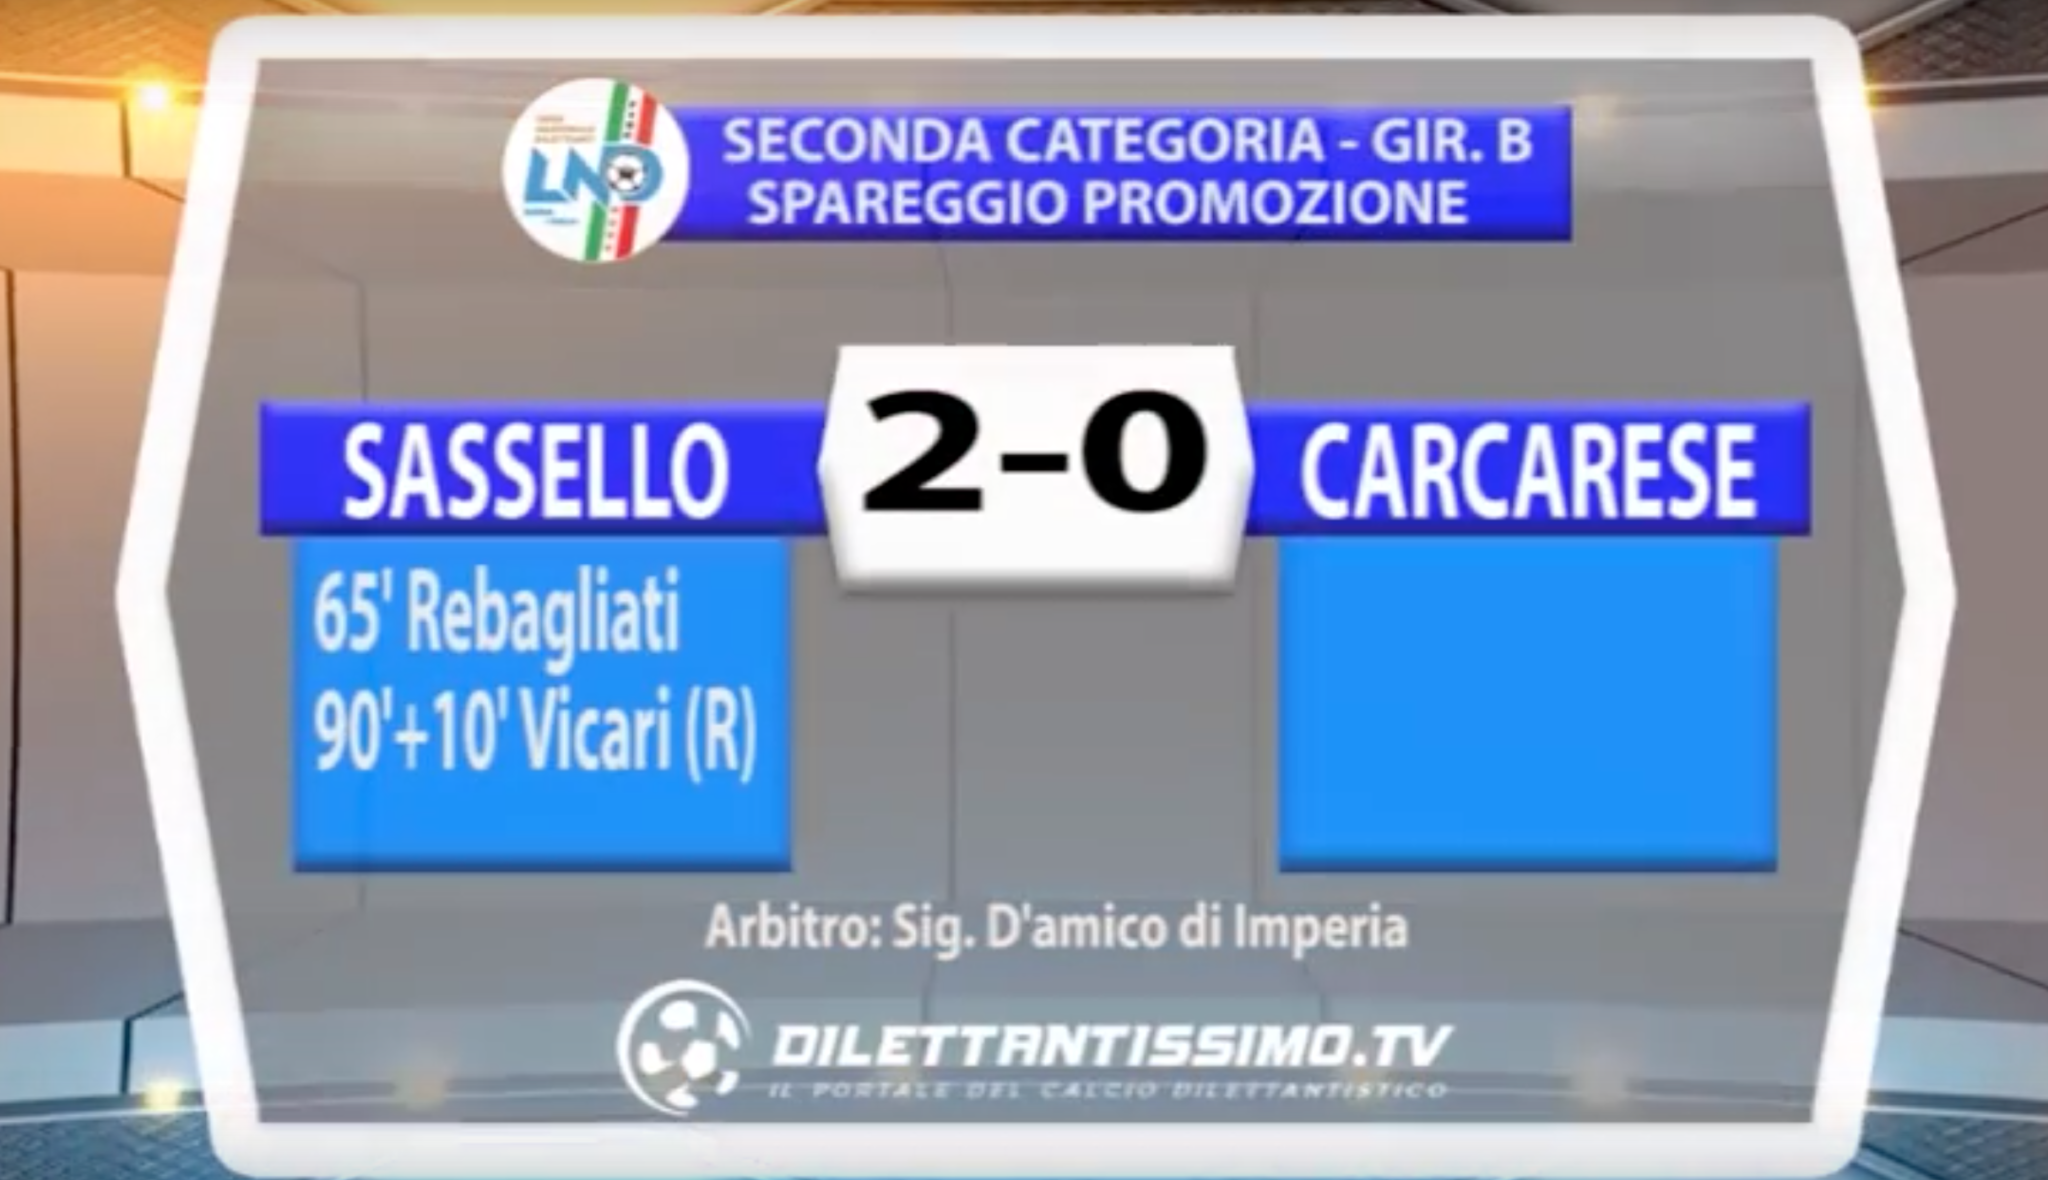 SASSELLO – CARCARESE 2-0 | SPAREGGIO SECONDA CAT. GIR. B